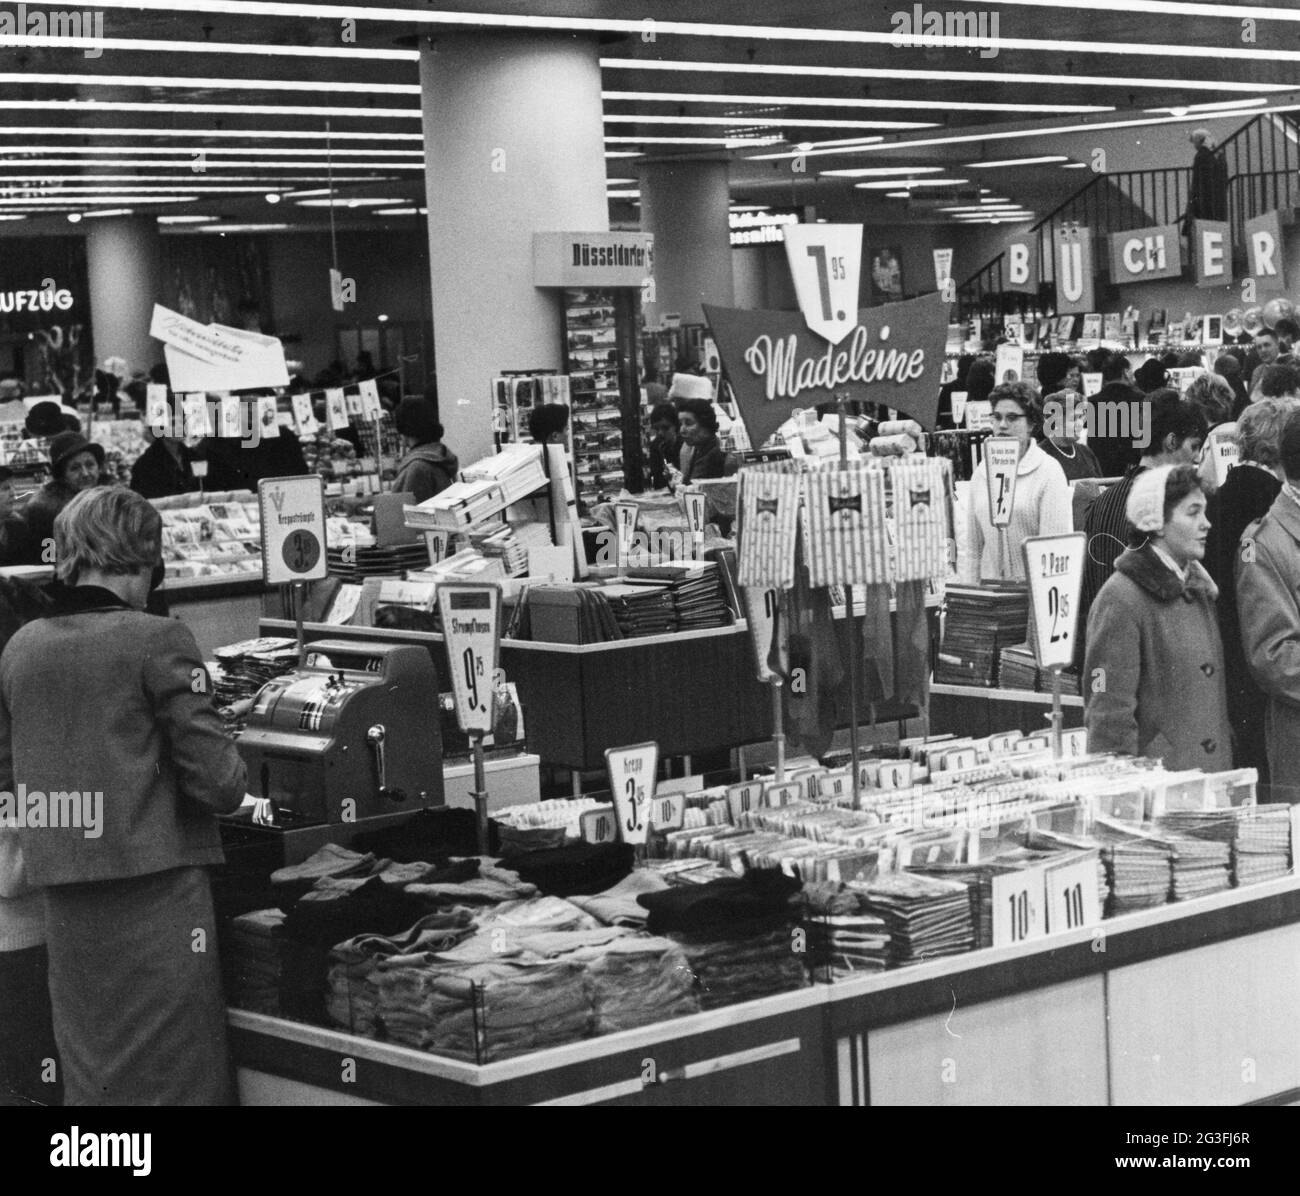 Commercio, negozi, grandi magazzini, grandi magazzini, Duesseldorf, 1960, INFORMAZIONI-AGGIUNTIVE-DI-AUTORIZZAZIONE-DIRITTI-NON-DISPONIBILI Foto Stock